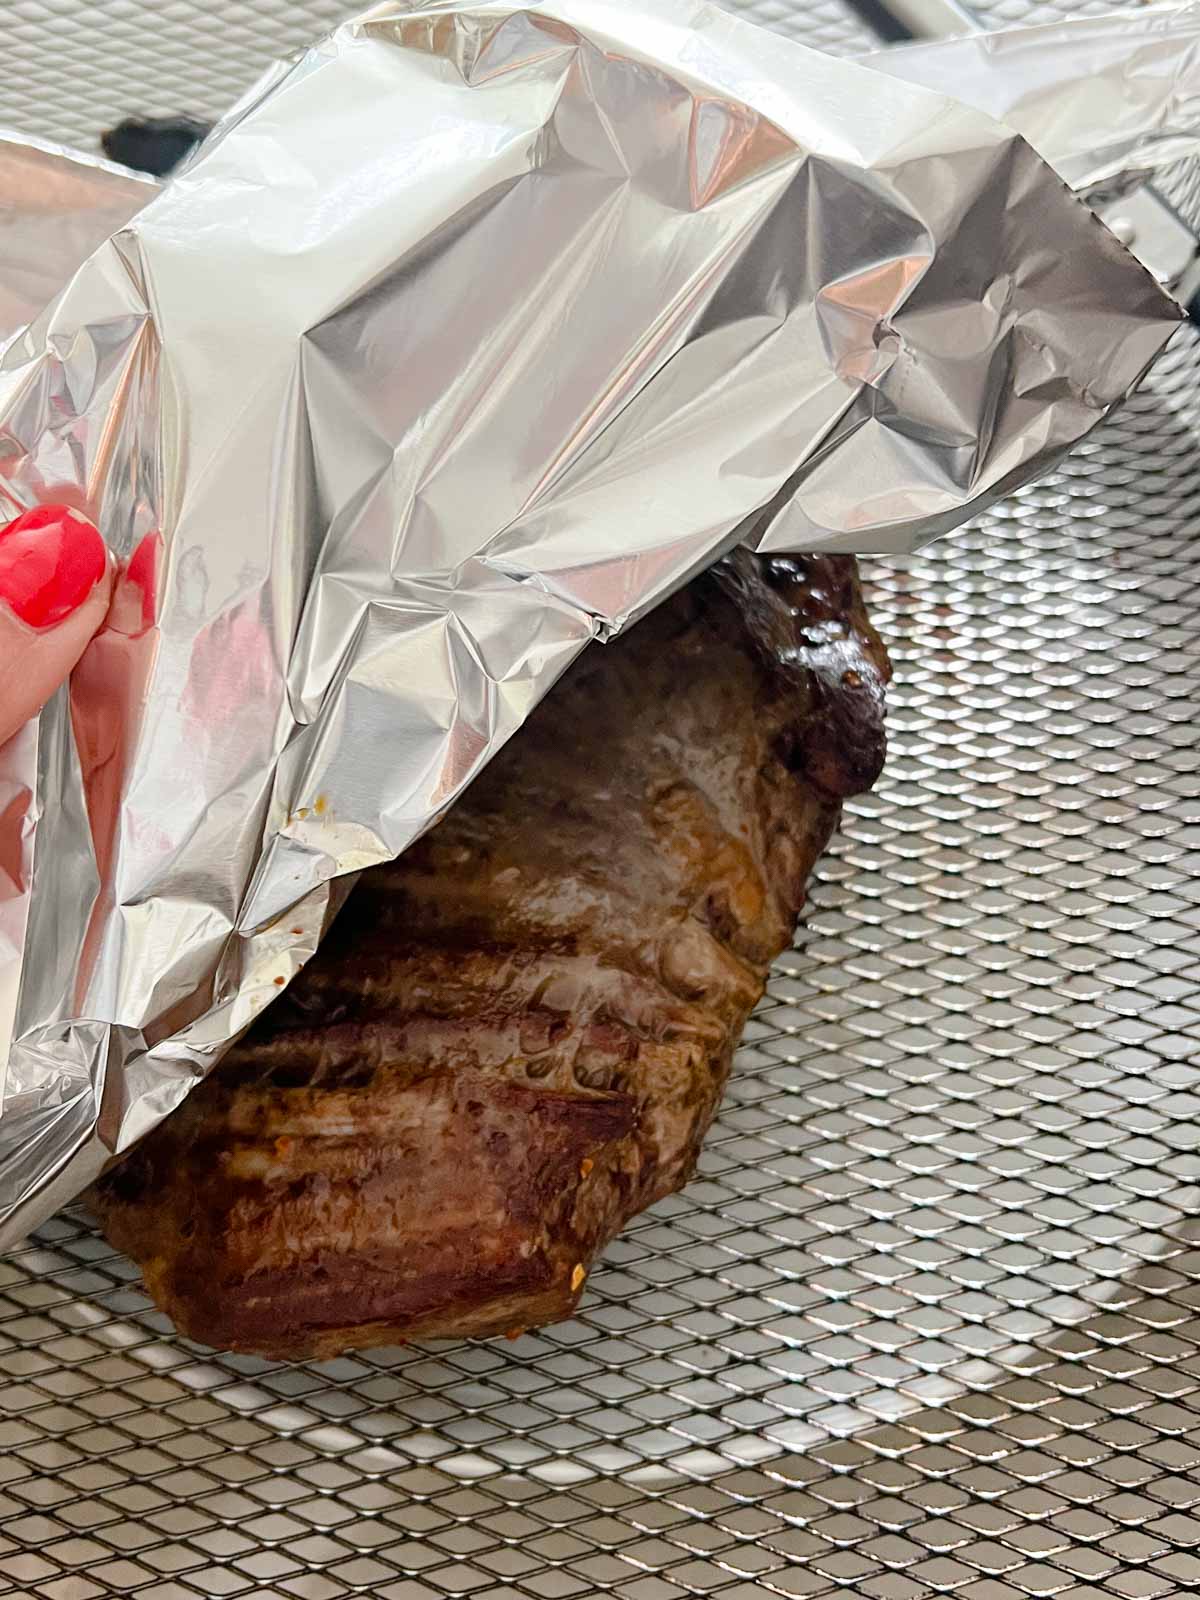 Aluminum foil covering a piece of steak prepared in the air fryer.